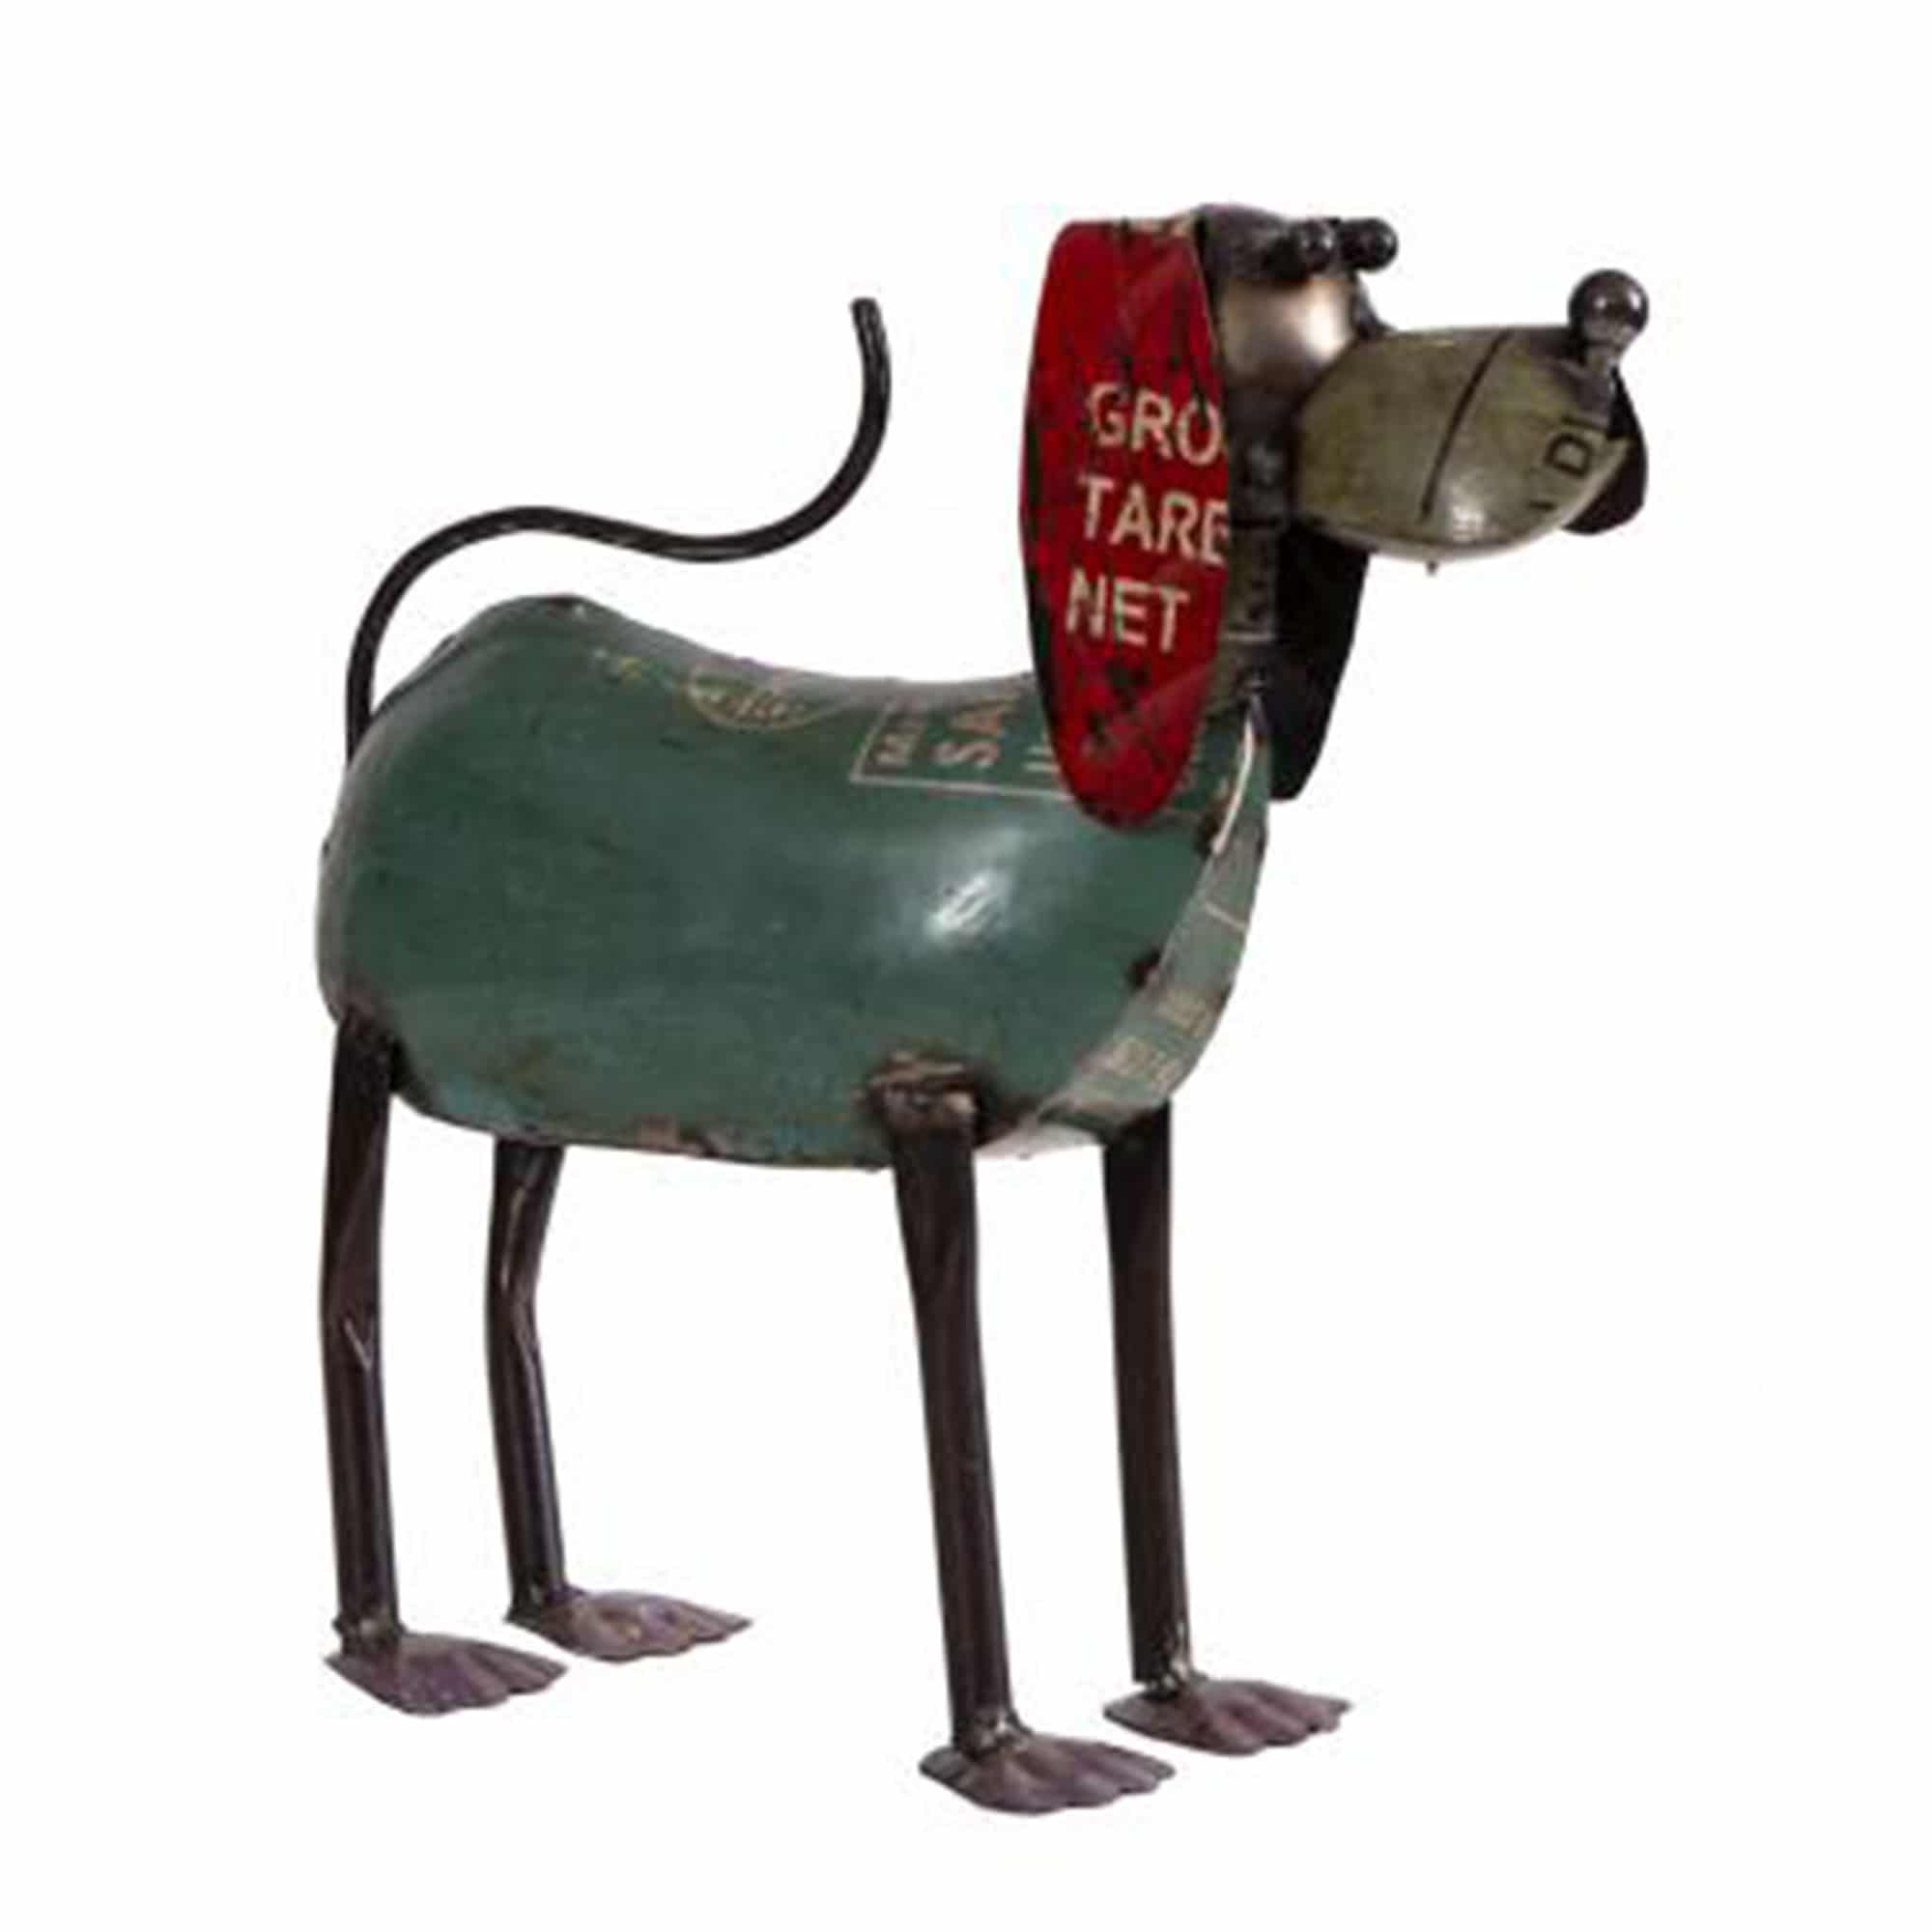 Originálny kovový pes v štýle upcycle - Dubu.sk - verní kvalite